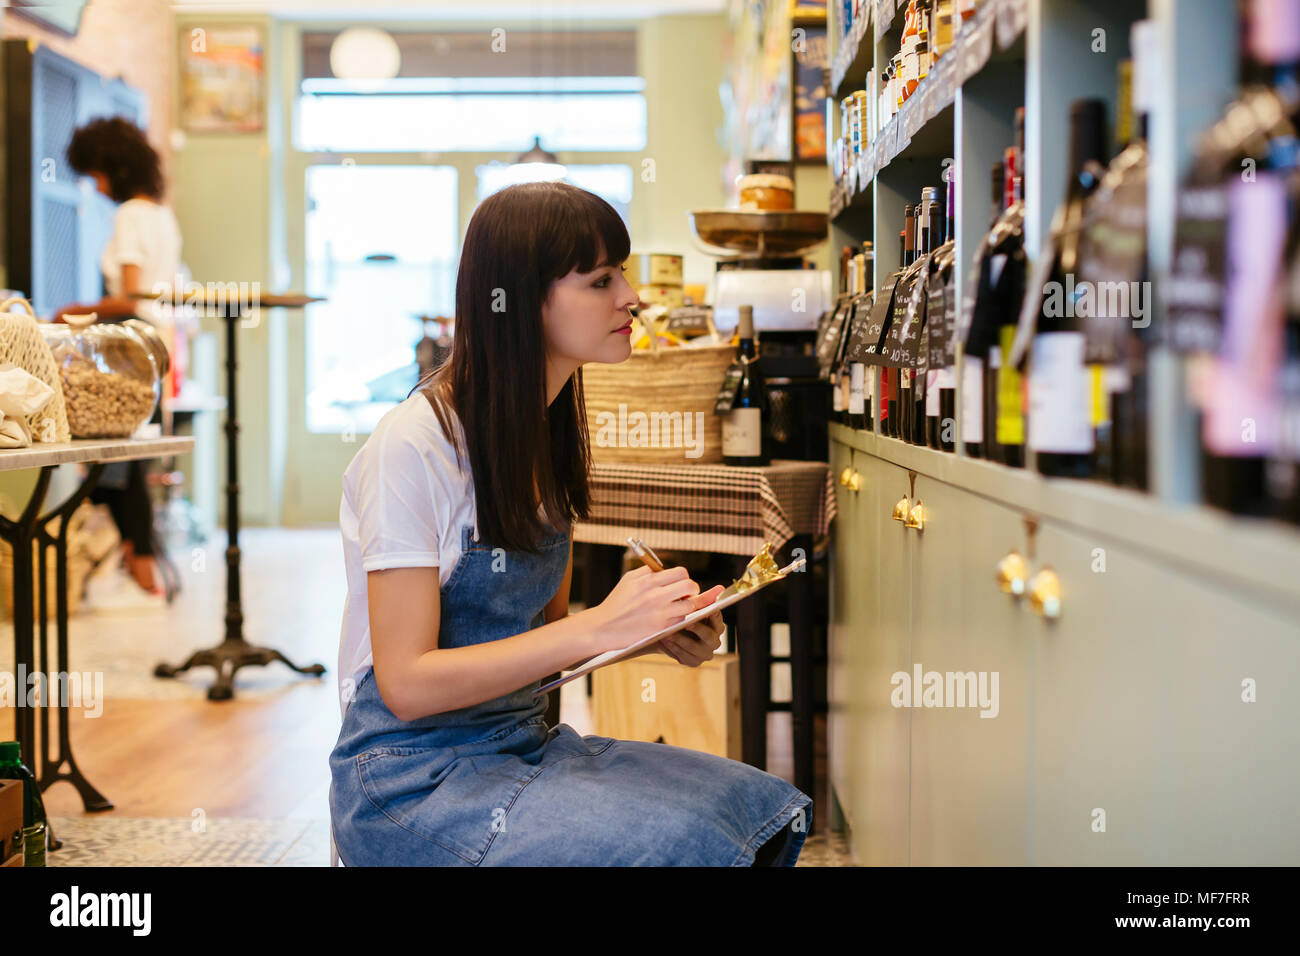 Mujer con el contenido del portapapeles en el estante en una tienda Foto de stock